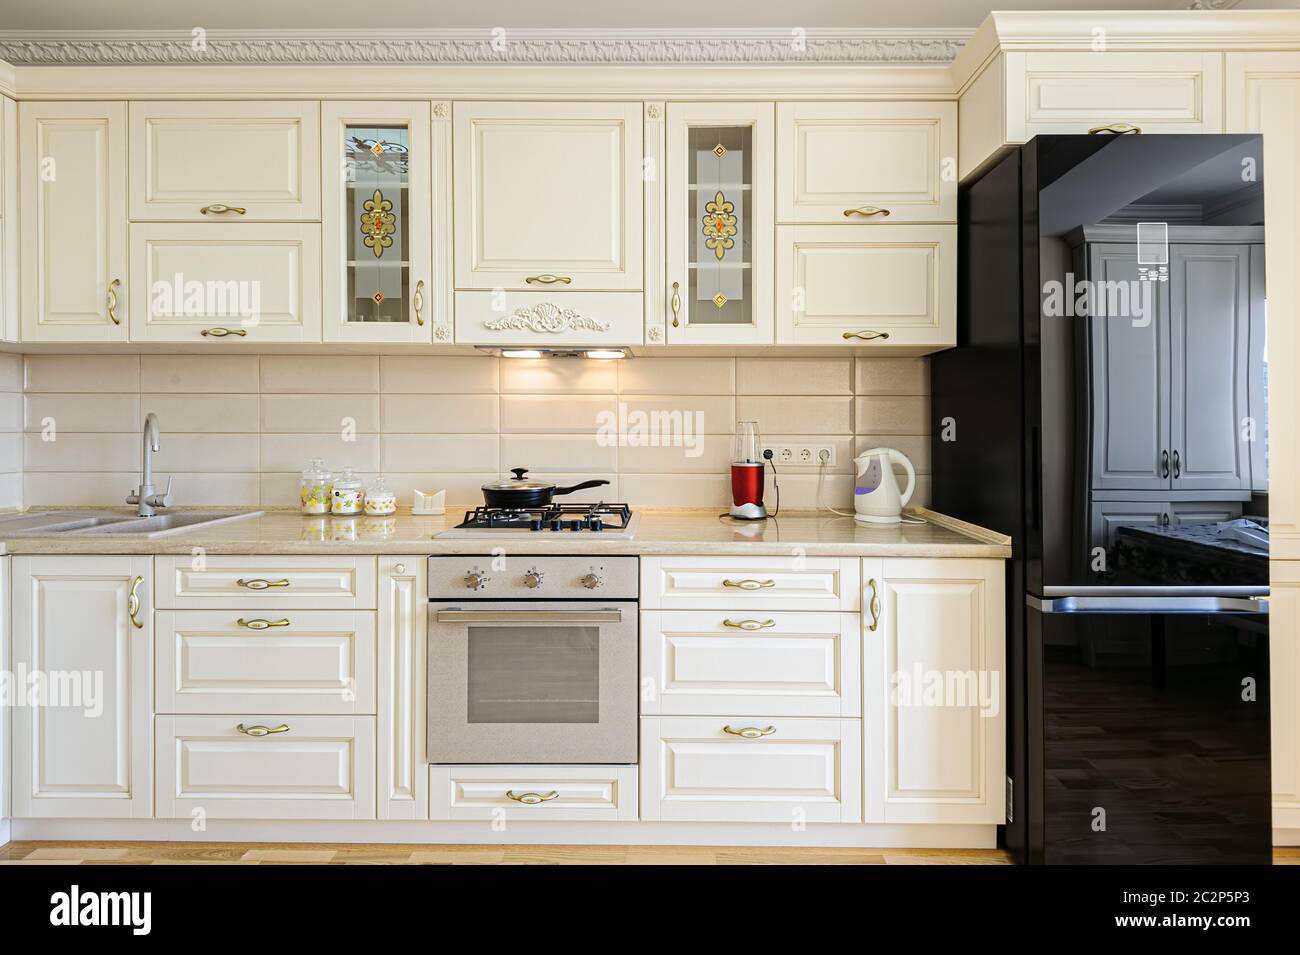 Luxury modern beige and white kitchen interior Stock Photo